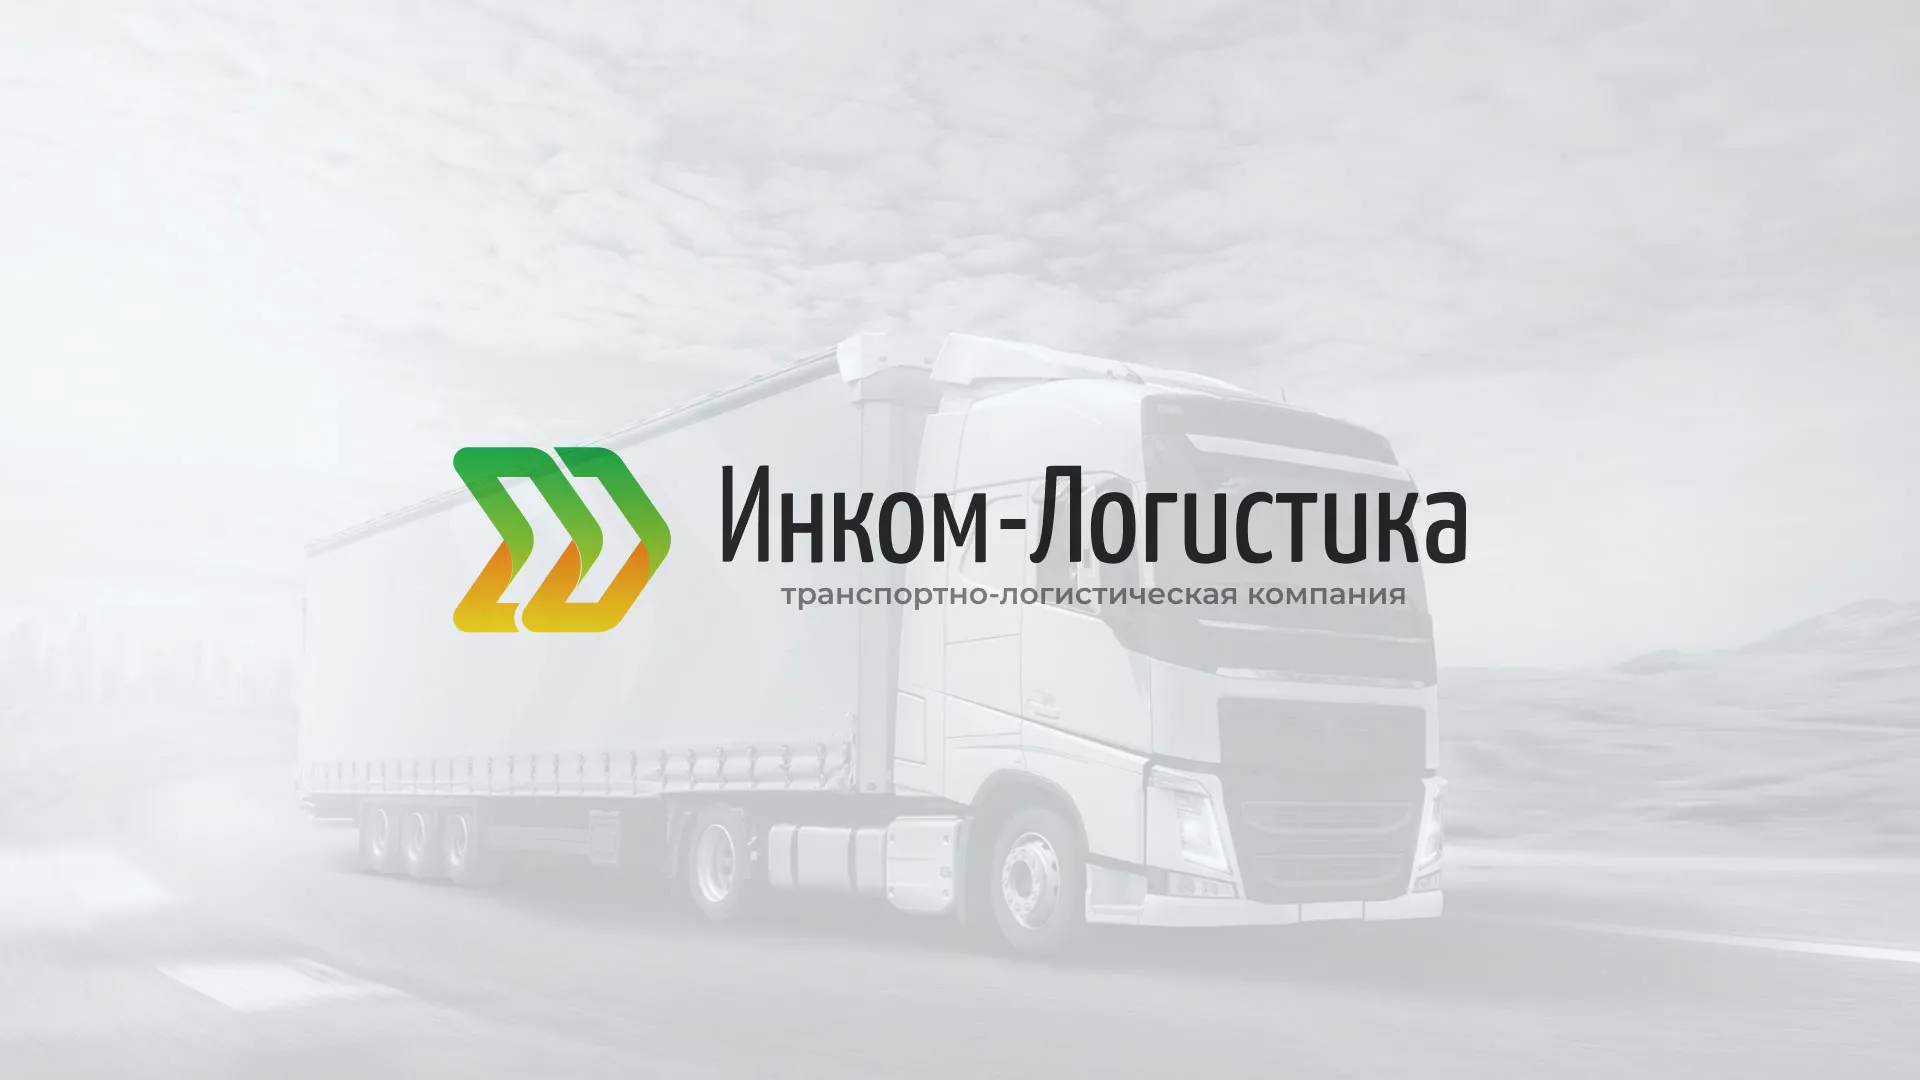 Разработка логотипа и сайта компании «Инком-Логистика» в Усолье-Сибирском